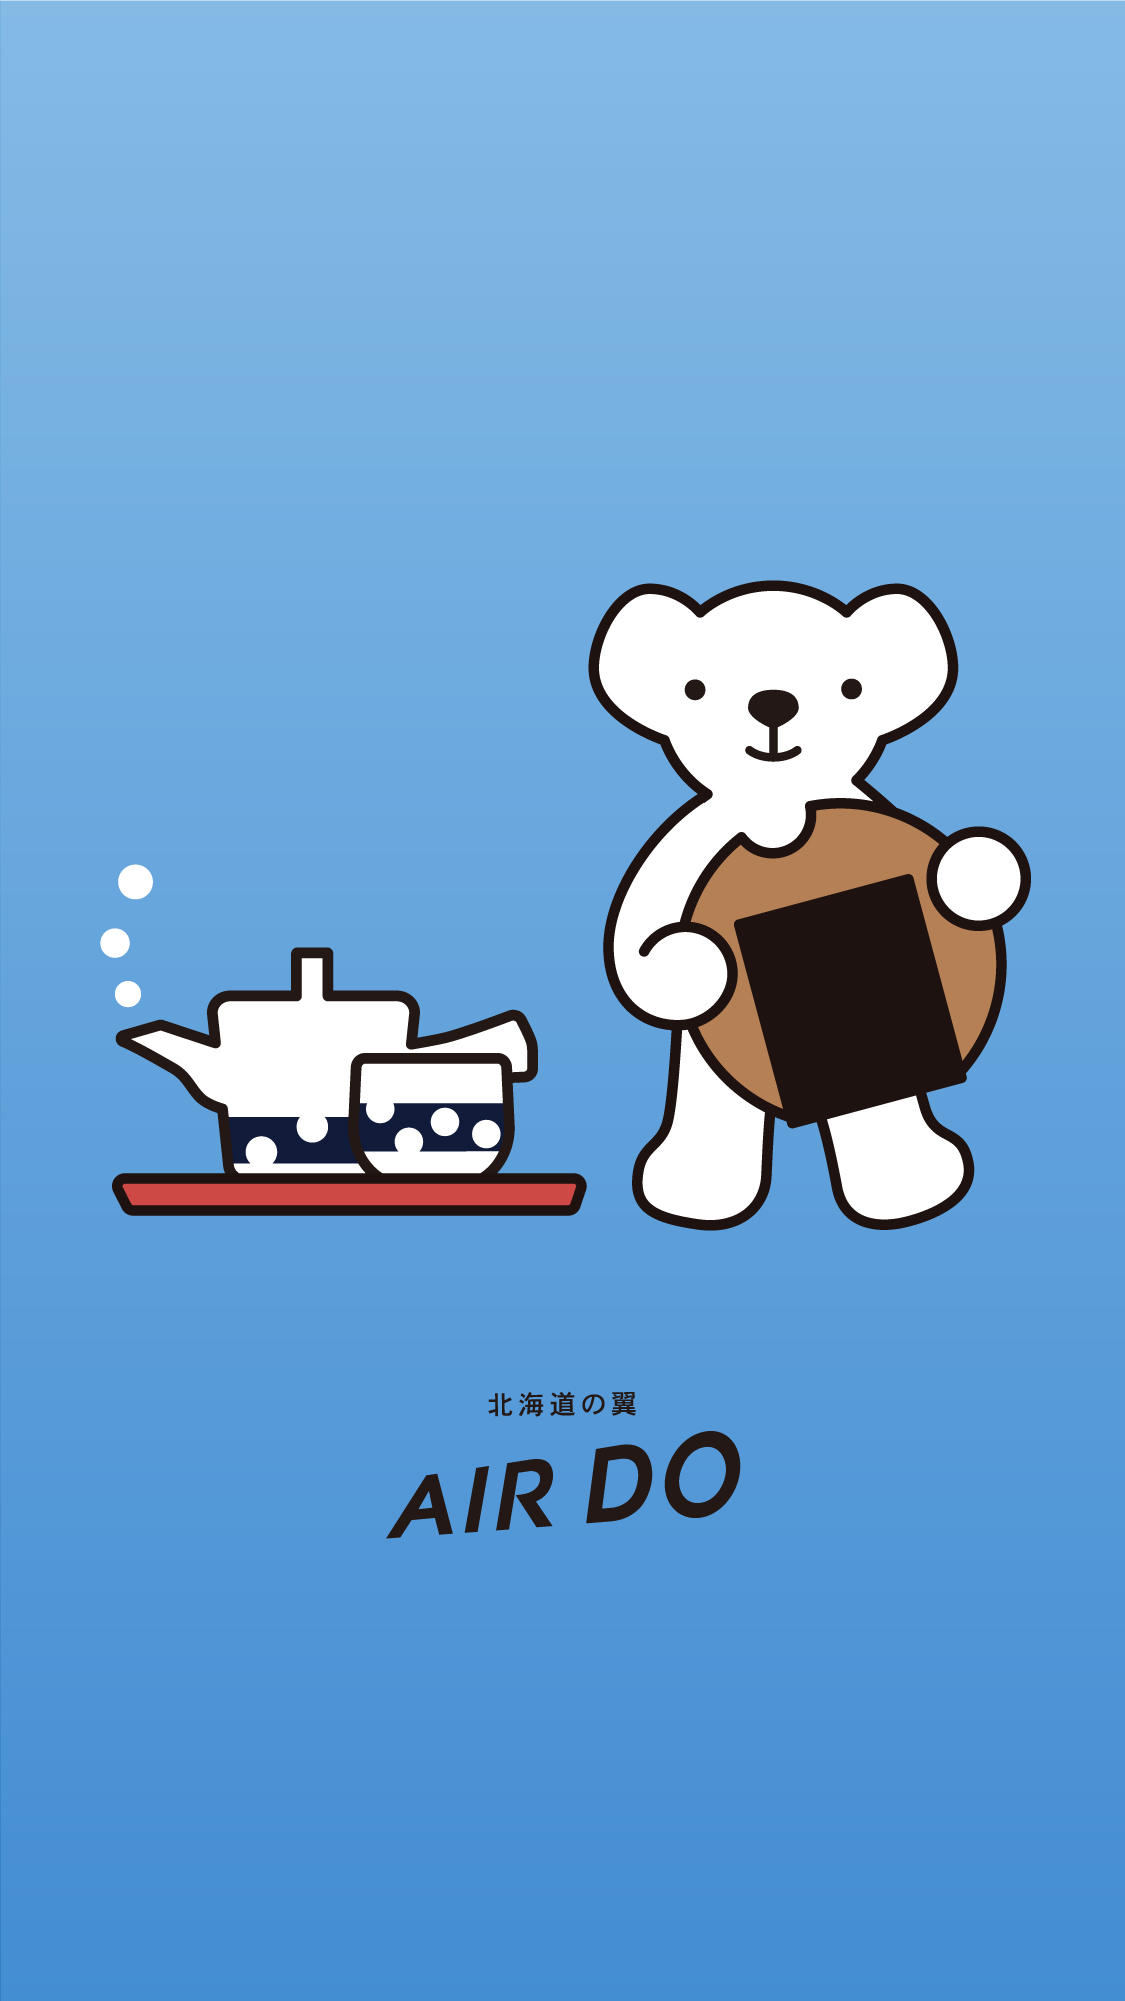 壁紙のダウンロード ダウンロード 北海道発着の飛行機予約 空席照会 Airdo エア ドゥ